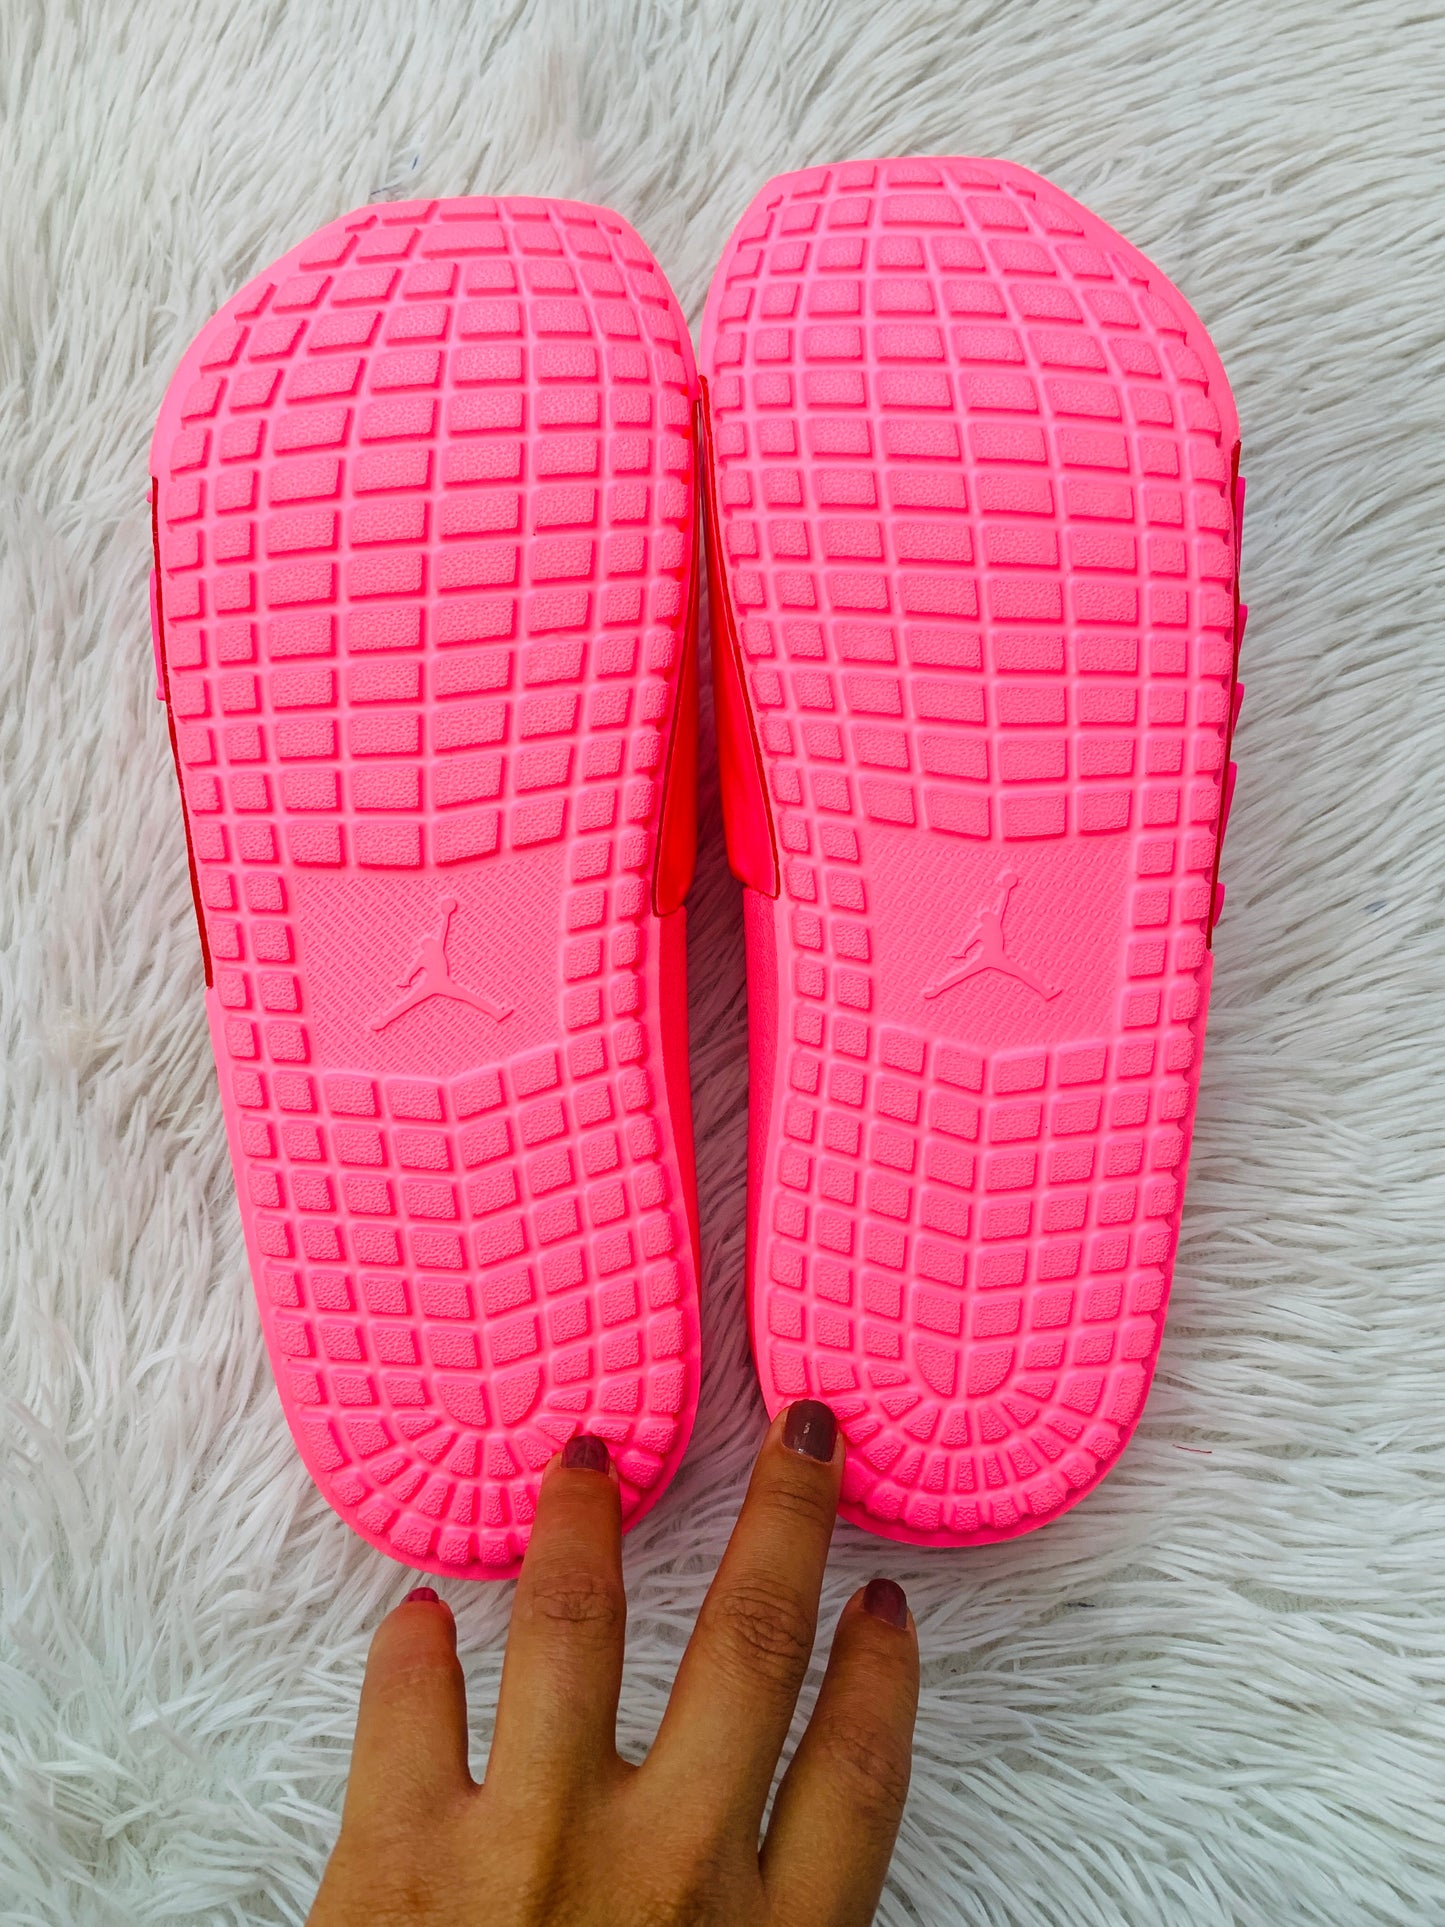 Sandalias Jordan original color rosado lumínico diseños de letras JOR